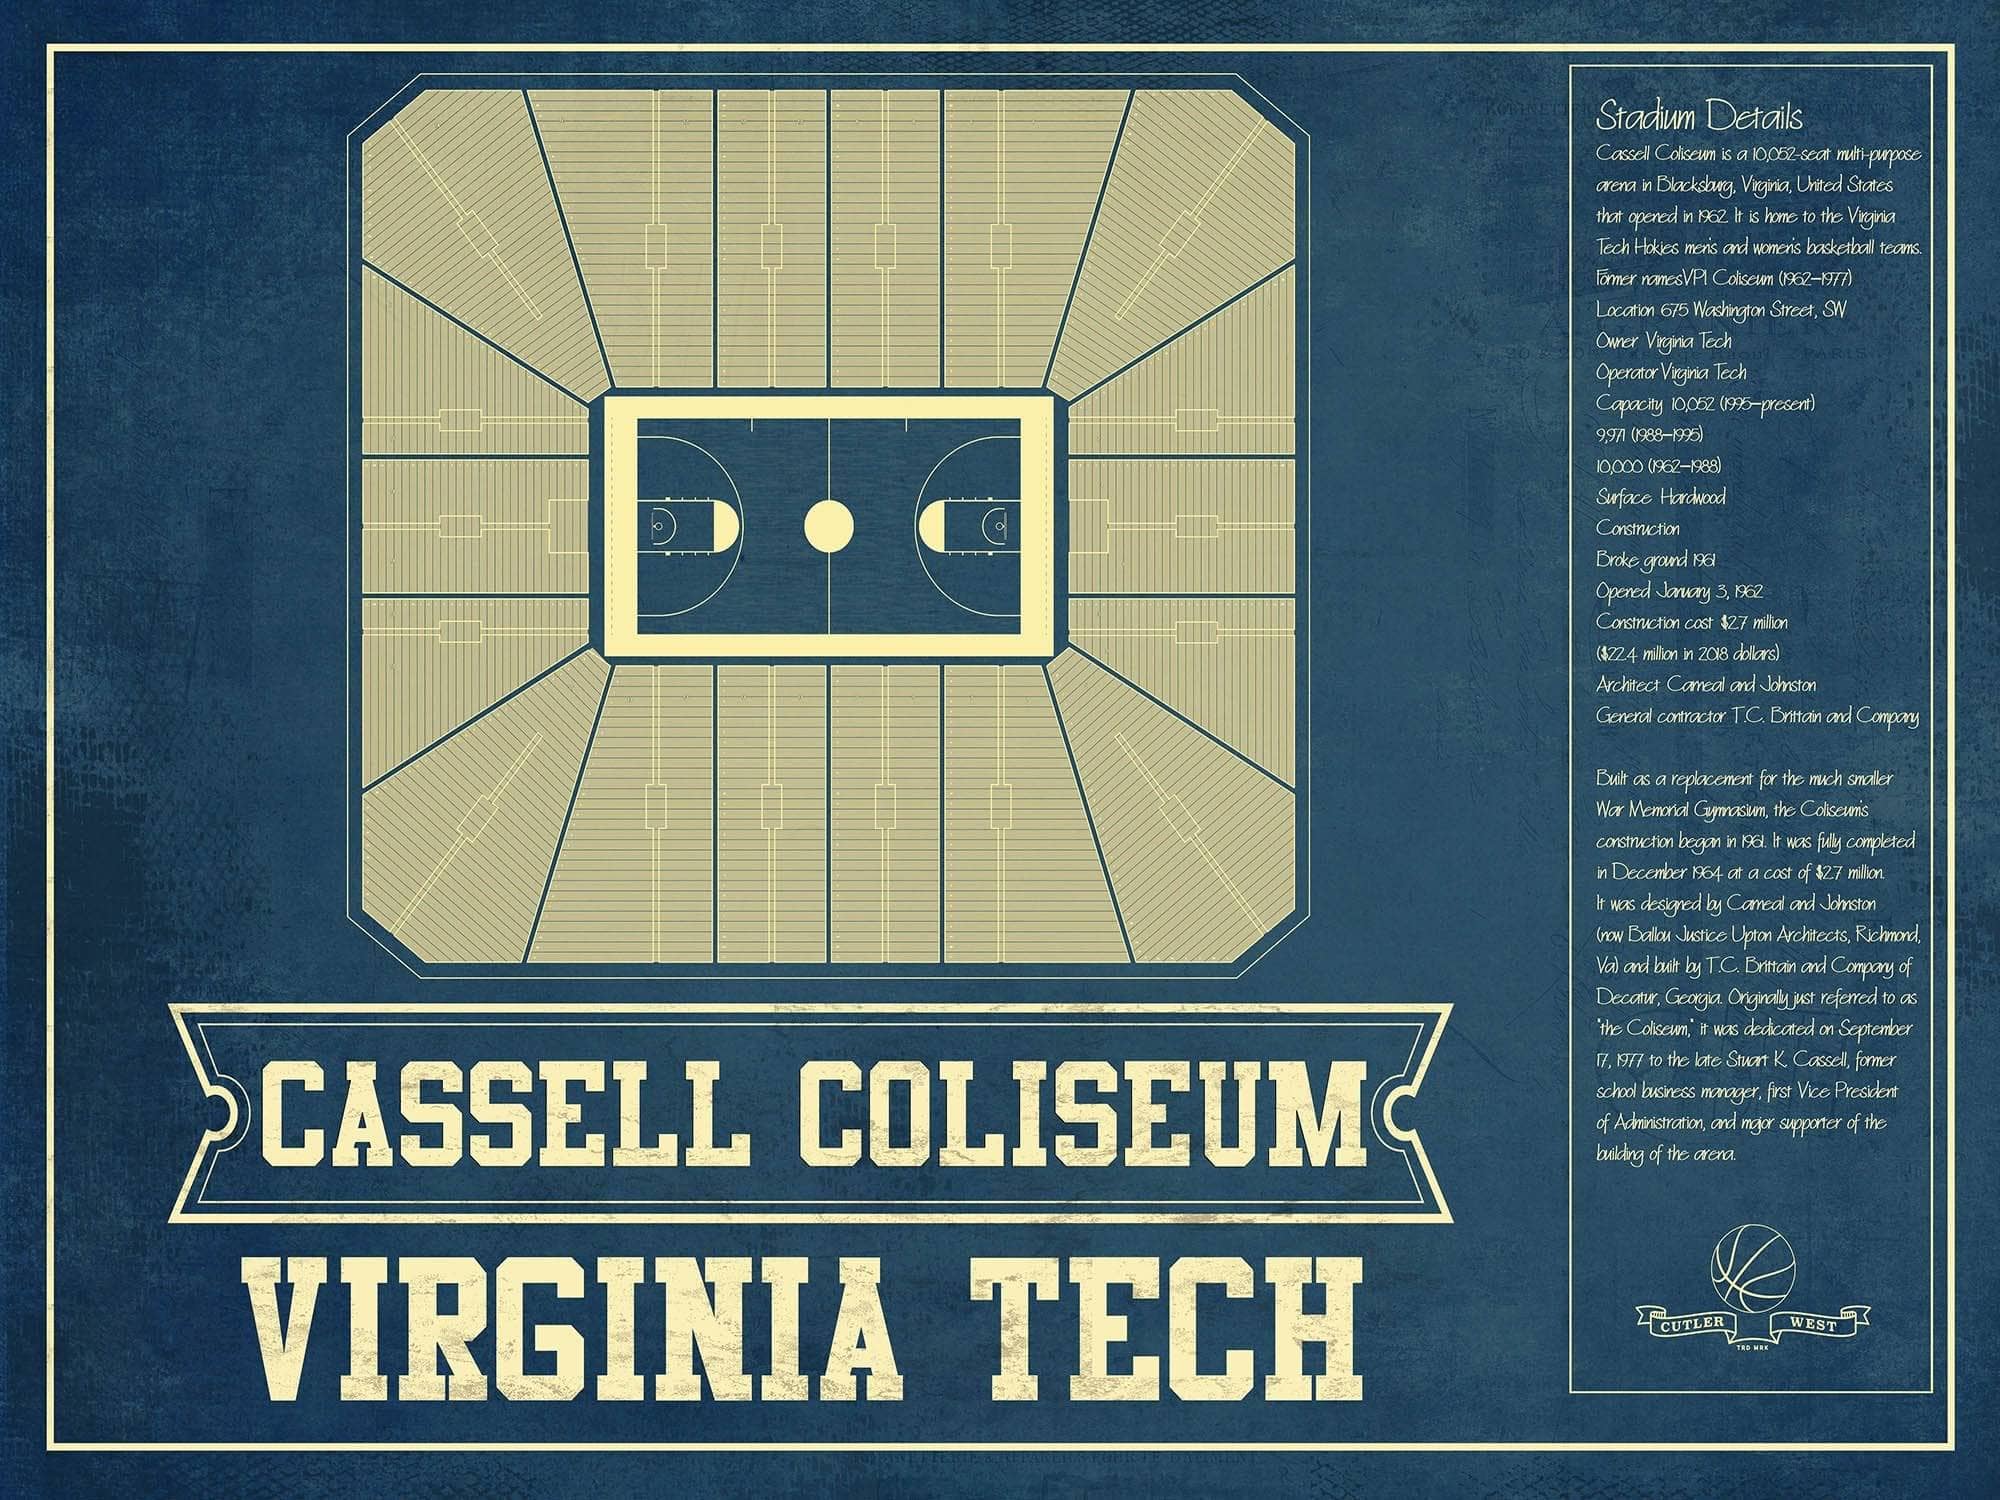 Cutler West 14" x 11" / Unframed Virginia Tech Hokies - Cassell Coliseum Seating Chart - College Basketball Blueprint Art 66207280285076